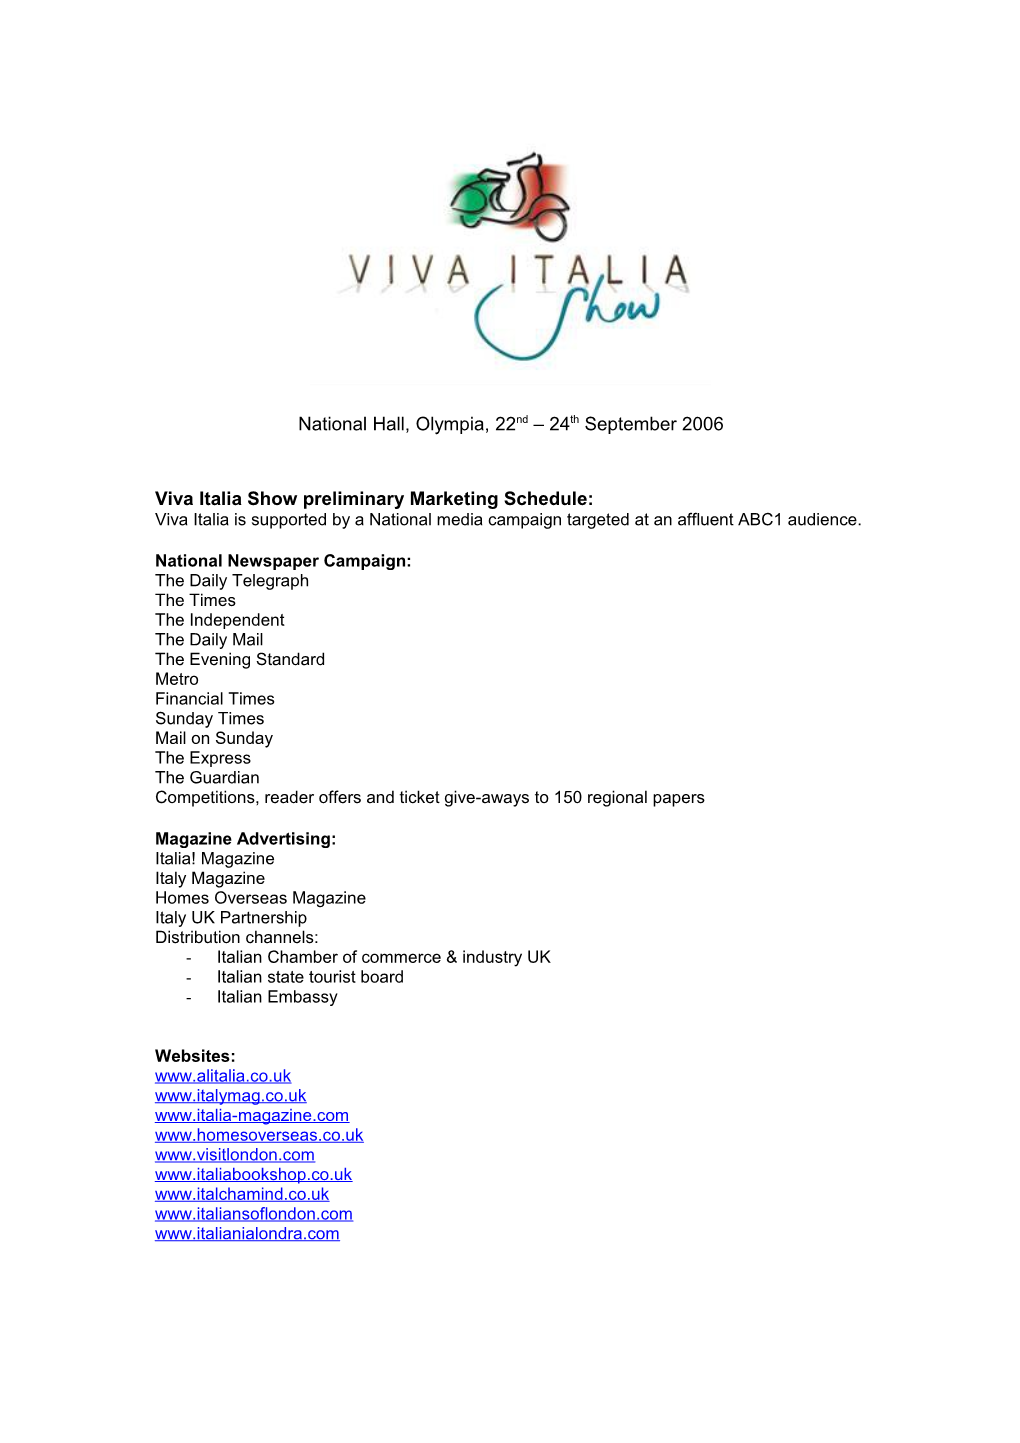 Viva Italia Show Preliminary Marketing Schedule